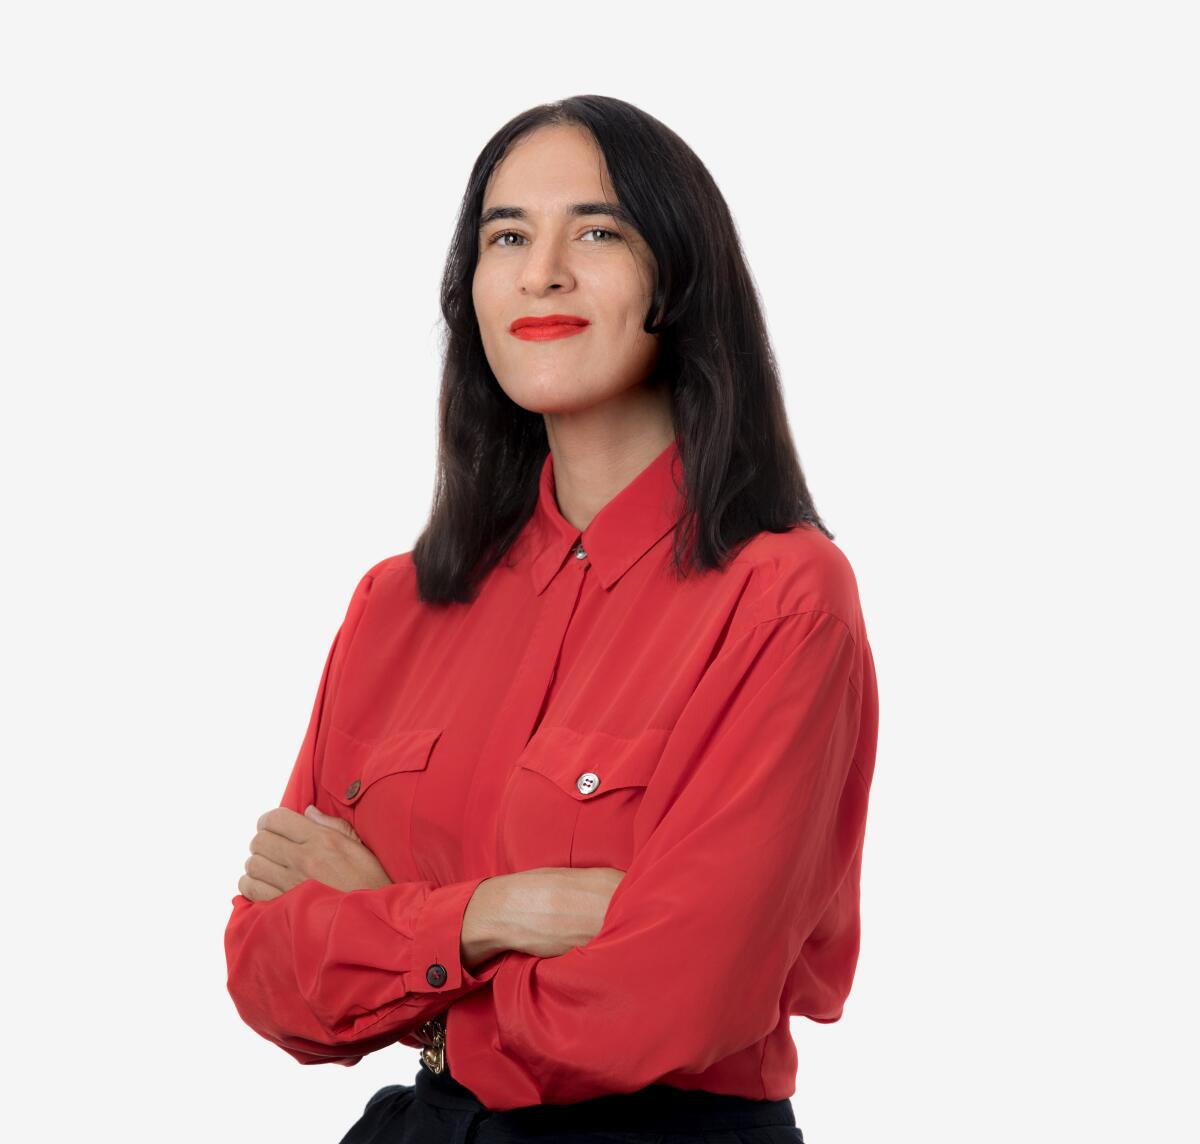 Former Managing Editor Sara Yasin